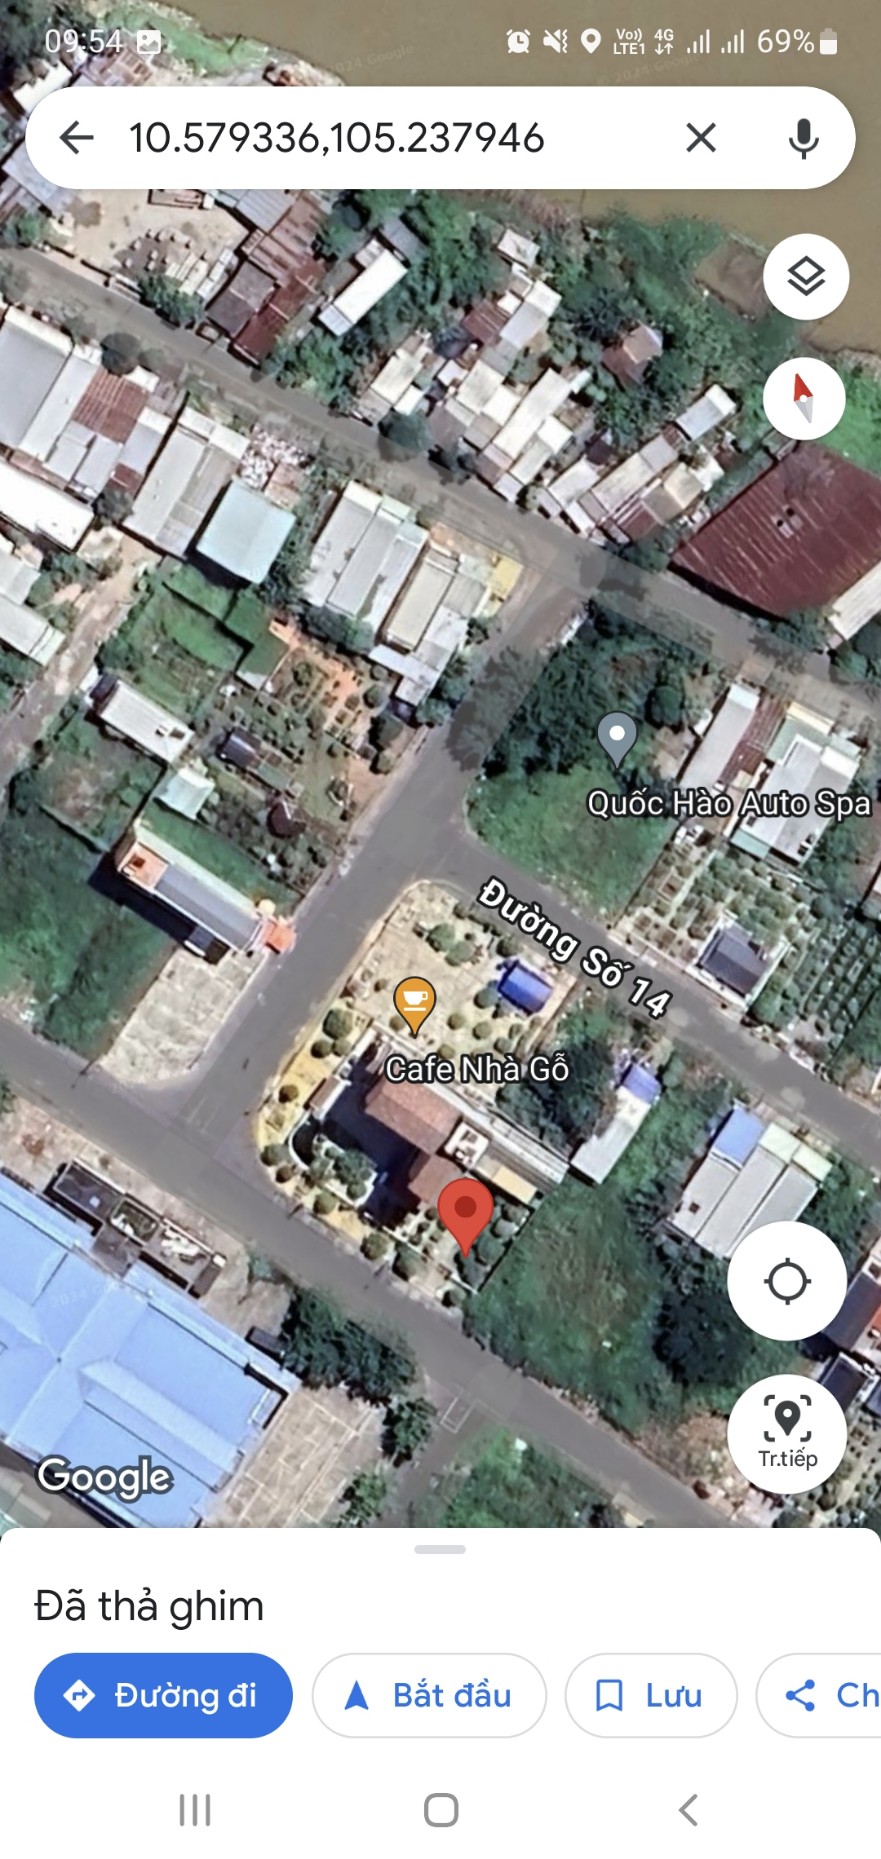 Chính chủ cần bán lô đất tại địa chỉ Thị trấn Cái Dầu, Huyện Châu Phú, An Giang - Ảnh 1